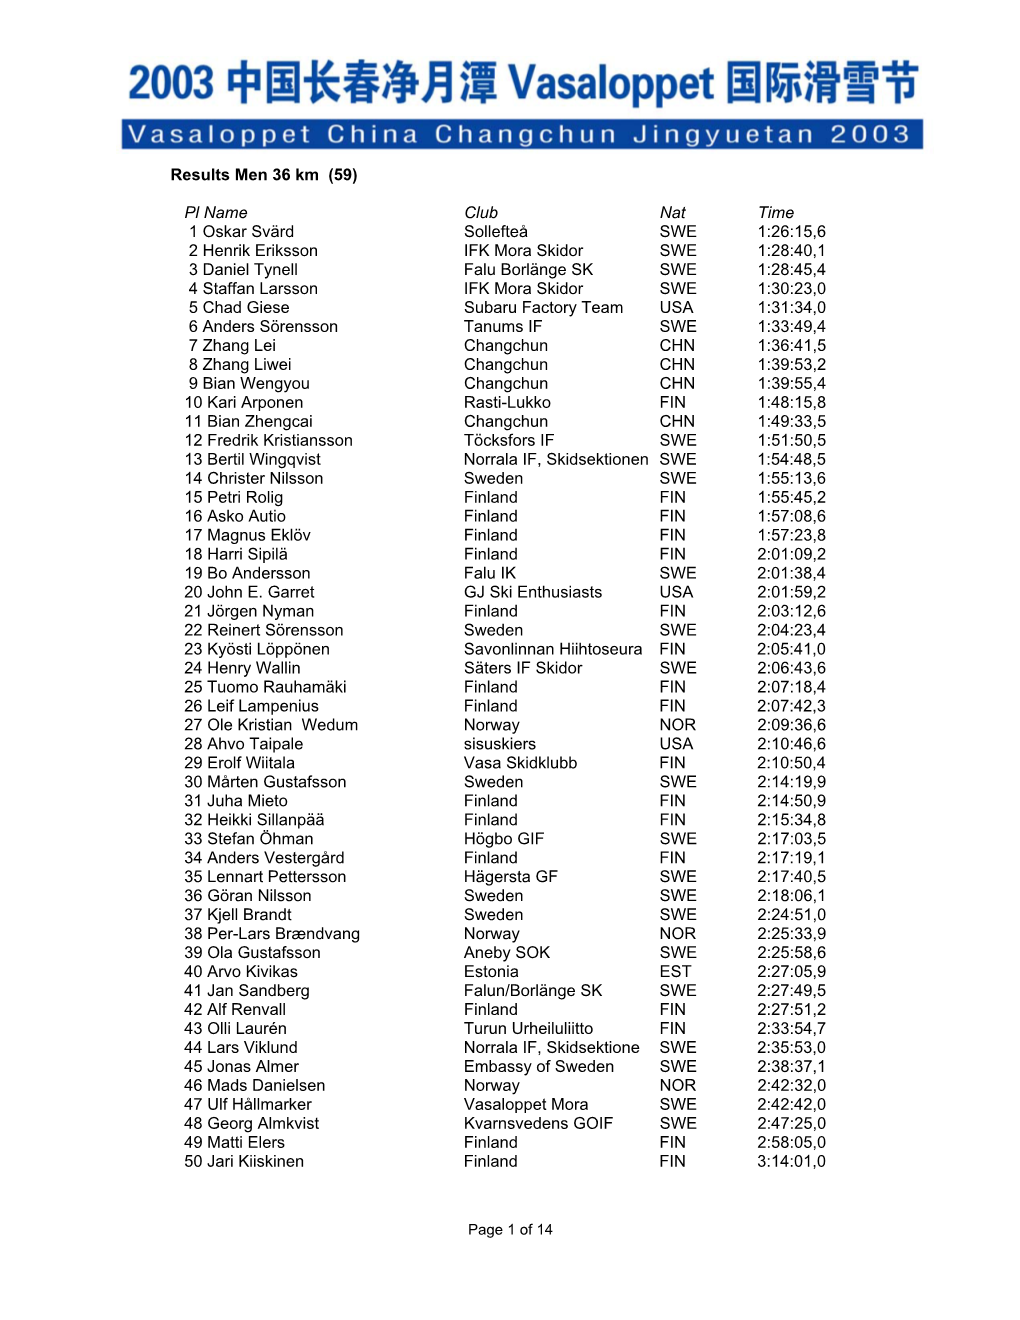 Results Men 36 Km (59)